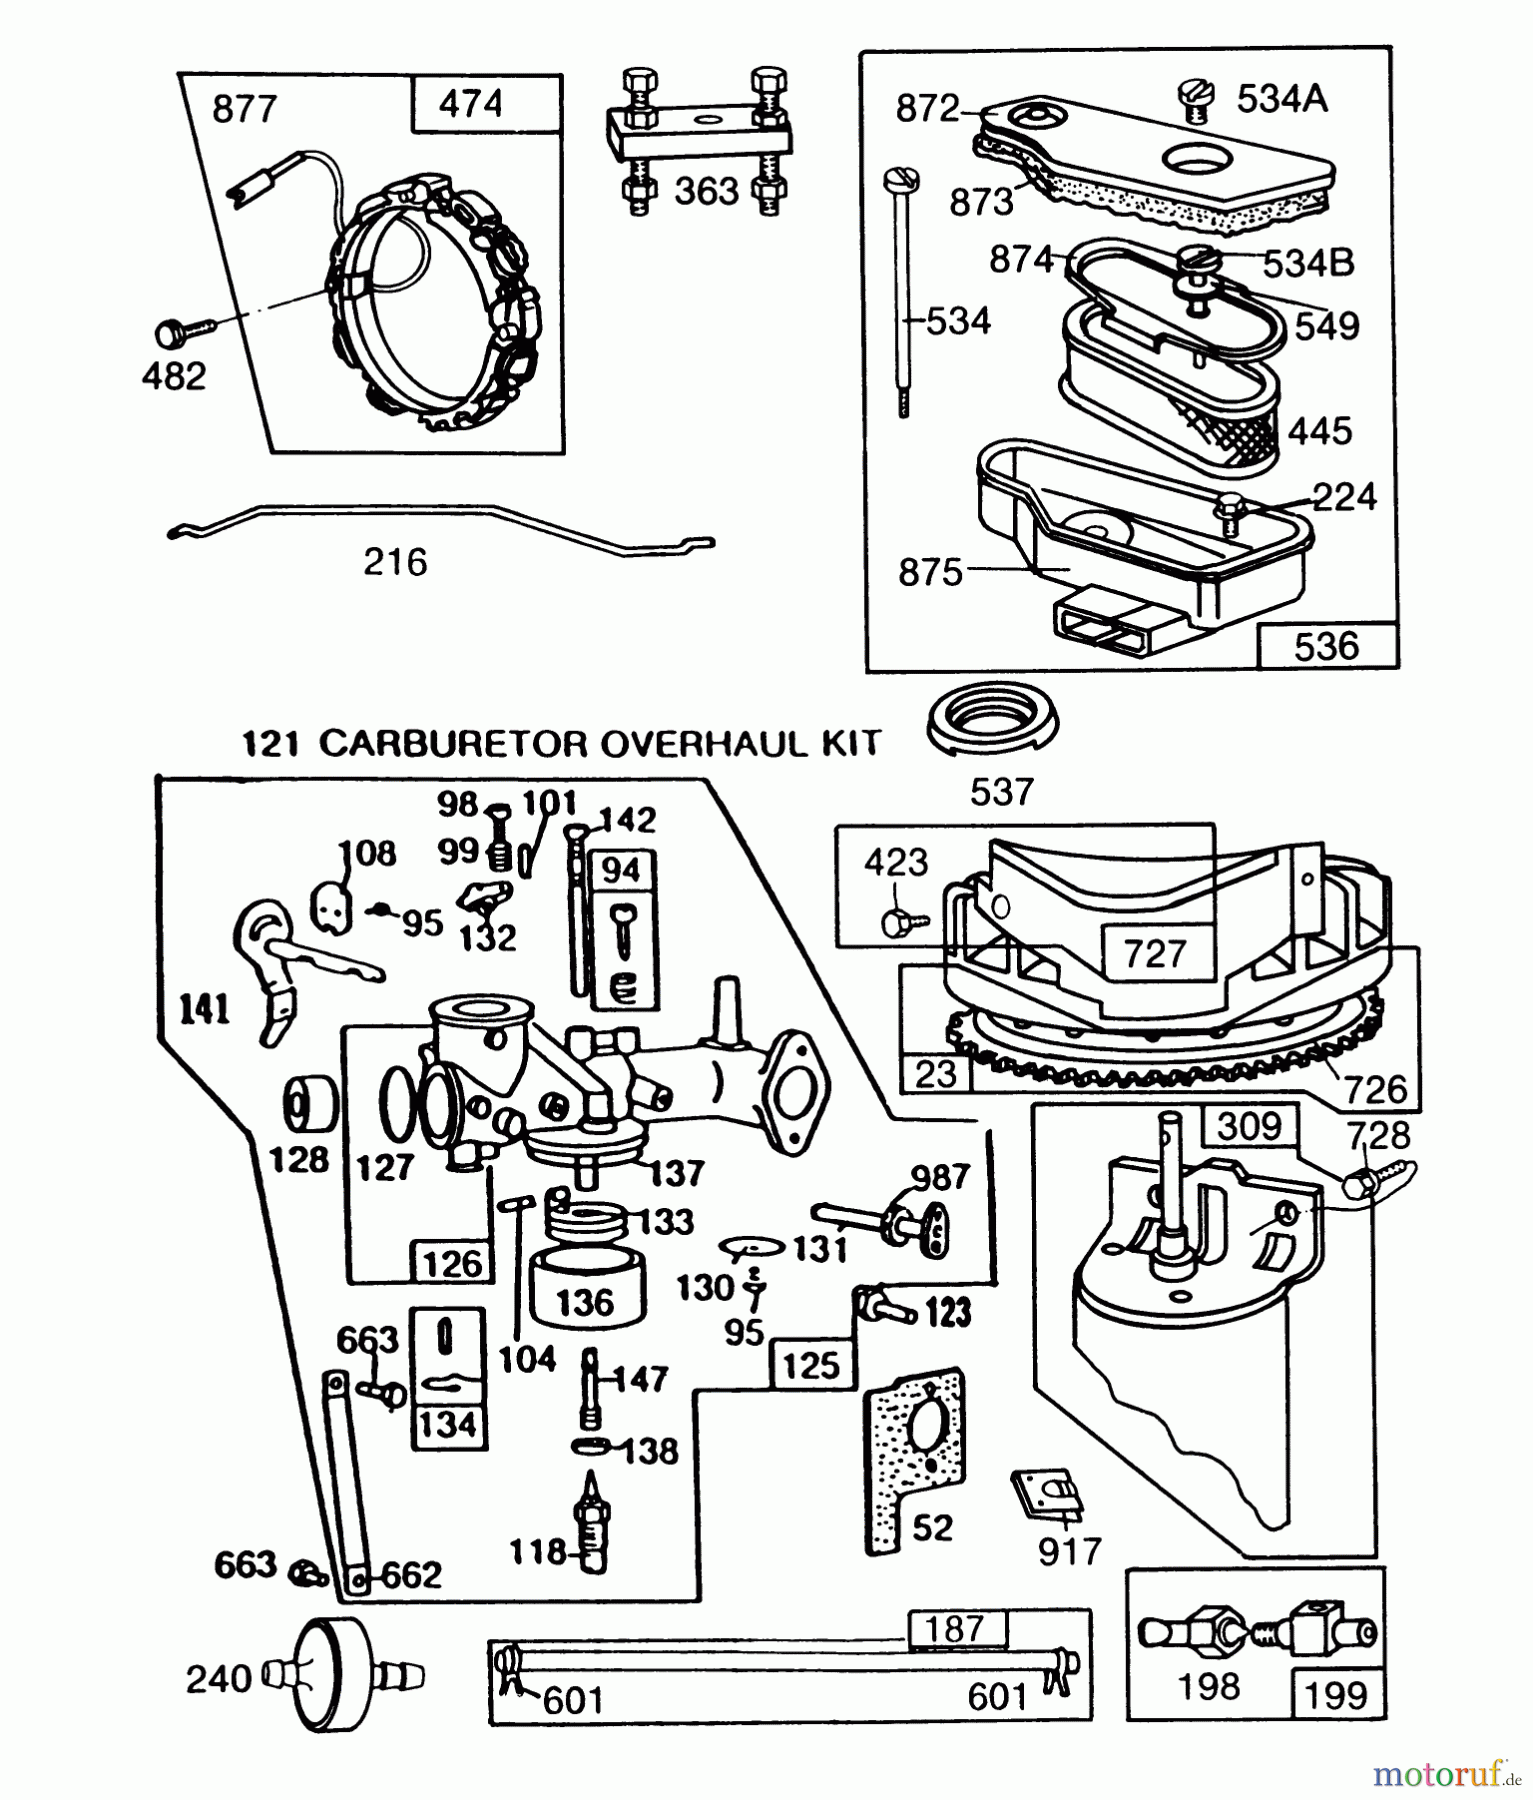  Toro Neu Mowers, Lawn & Garden Tractor Seite 1 57360 (11-32) - Toro 11-32 Lawn Tractor, 1987 (7000001-7999999) ENGINE BRIGGS & STRATTON MODEL 253707-0157-01 #3